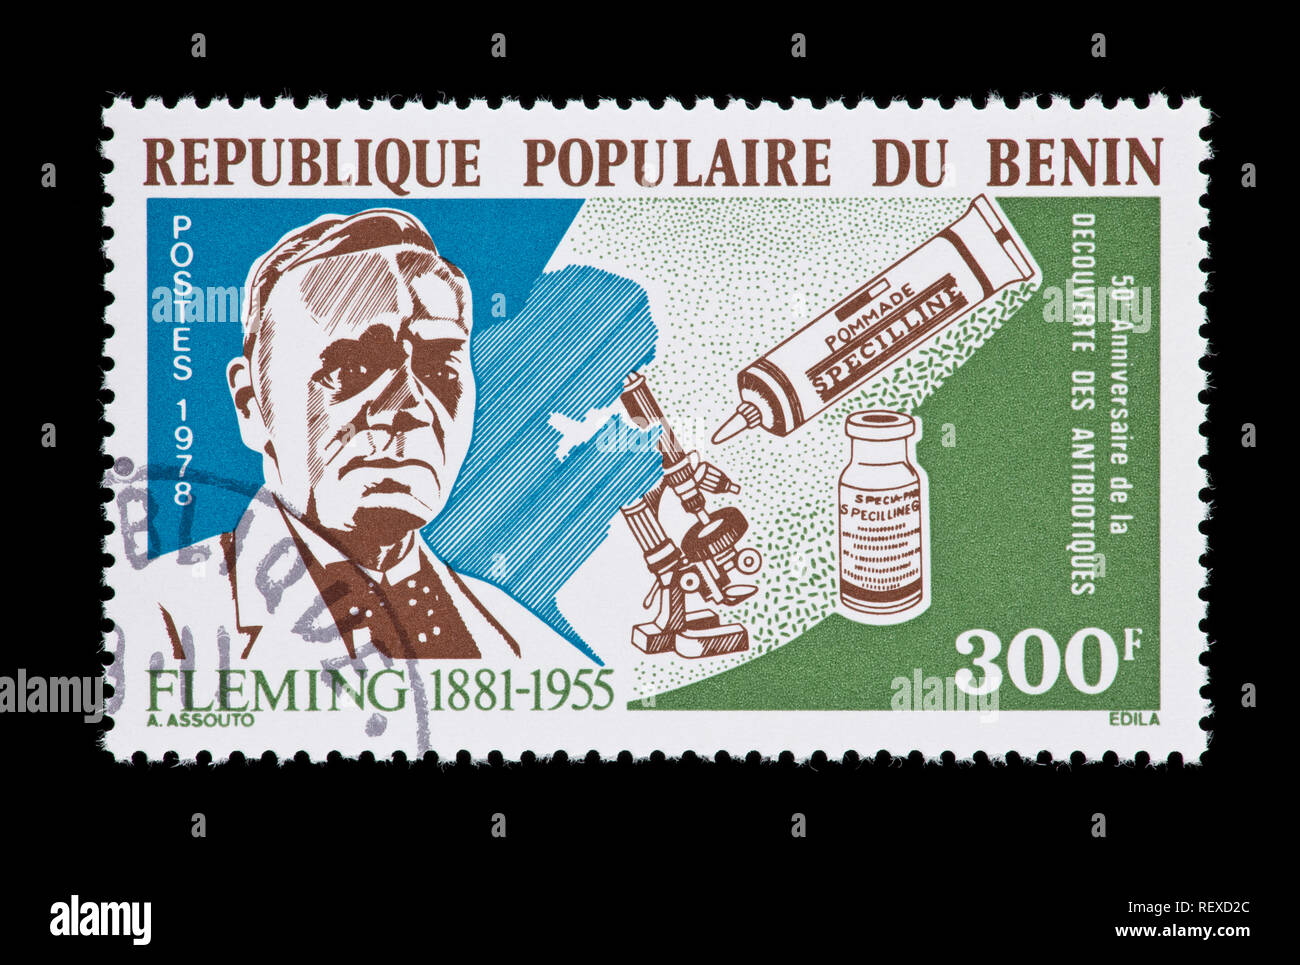 Sello fro Benin representando a Alexander Fleming, el microscopio y el tubo de la penicilina. Foto de stock